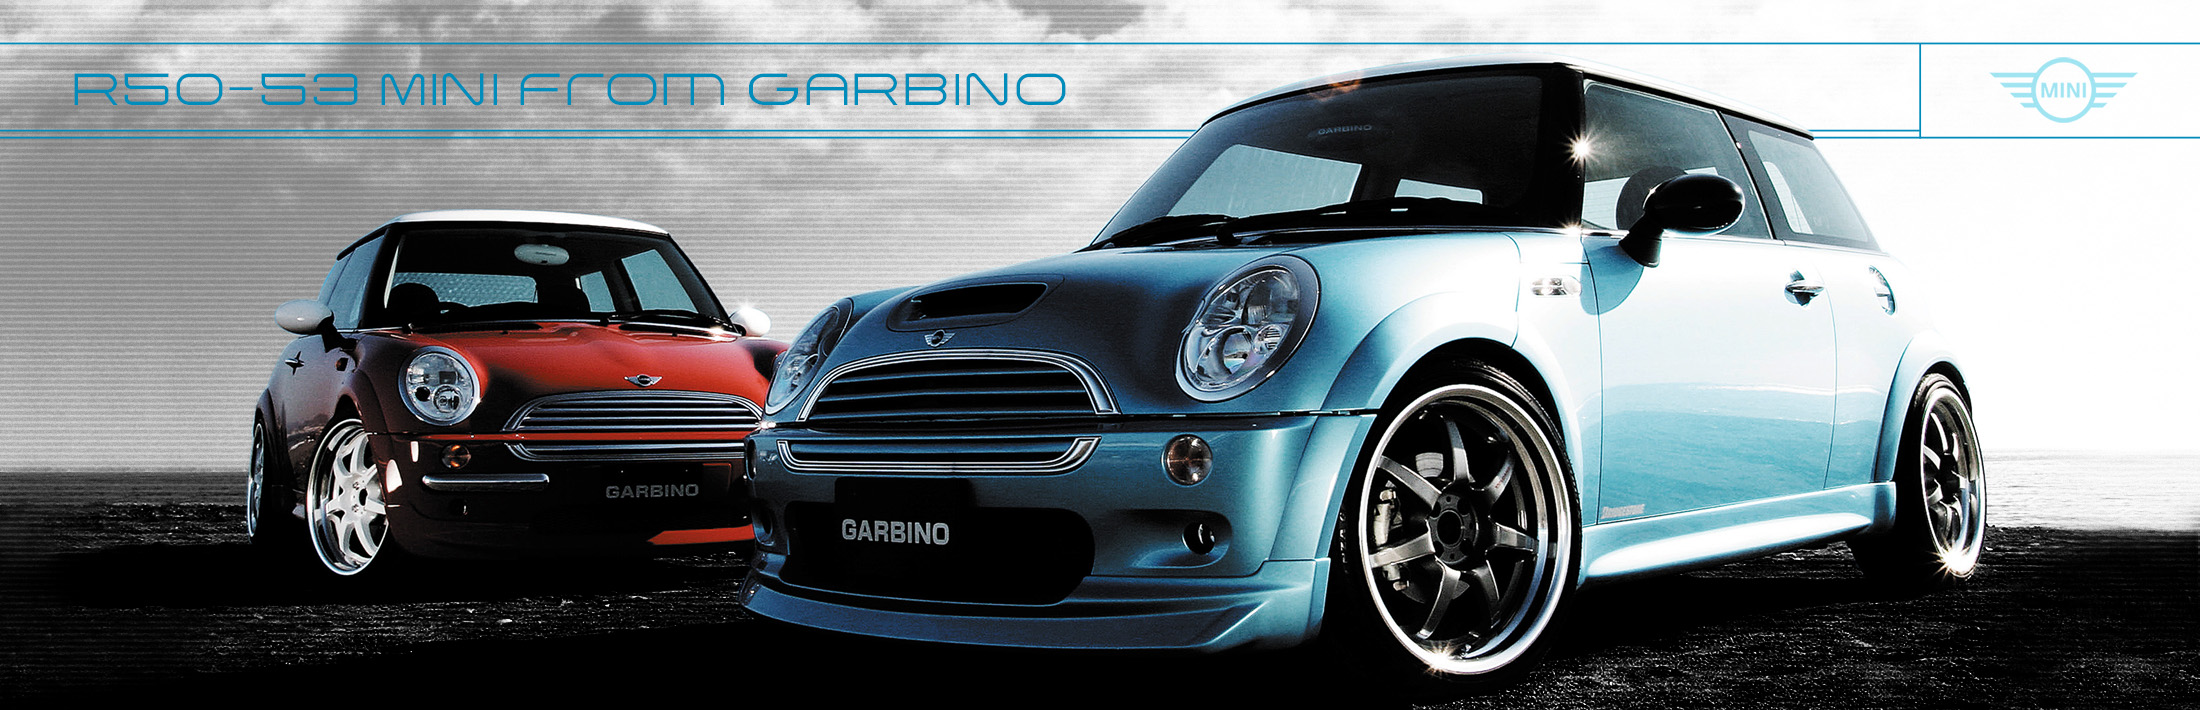 GARBINO R50 MINI